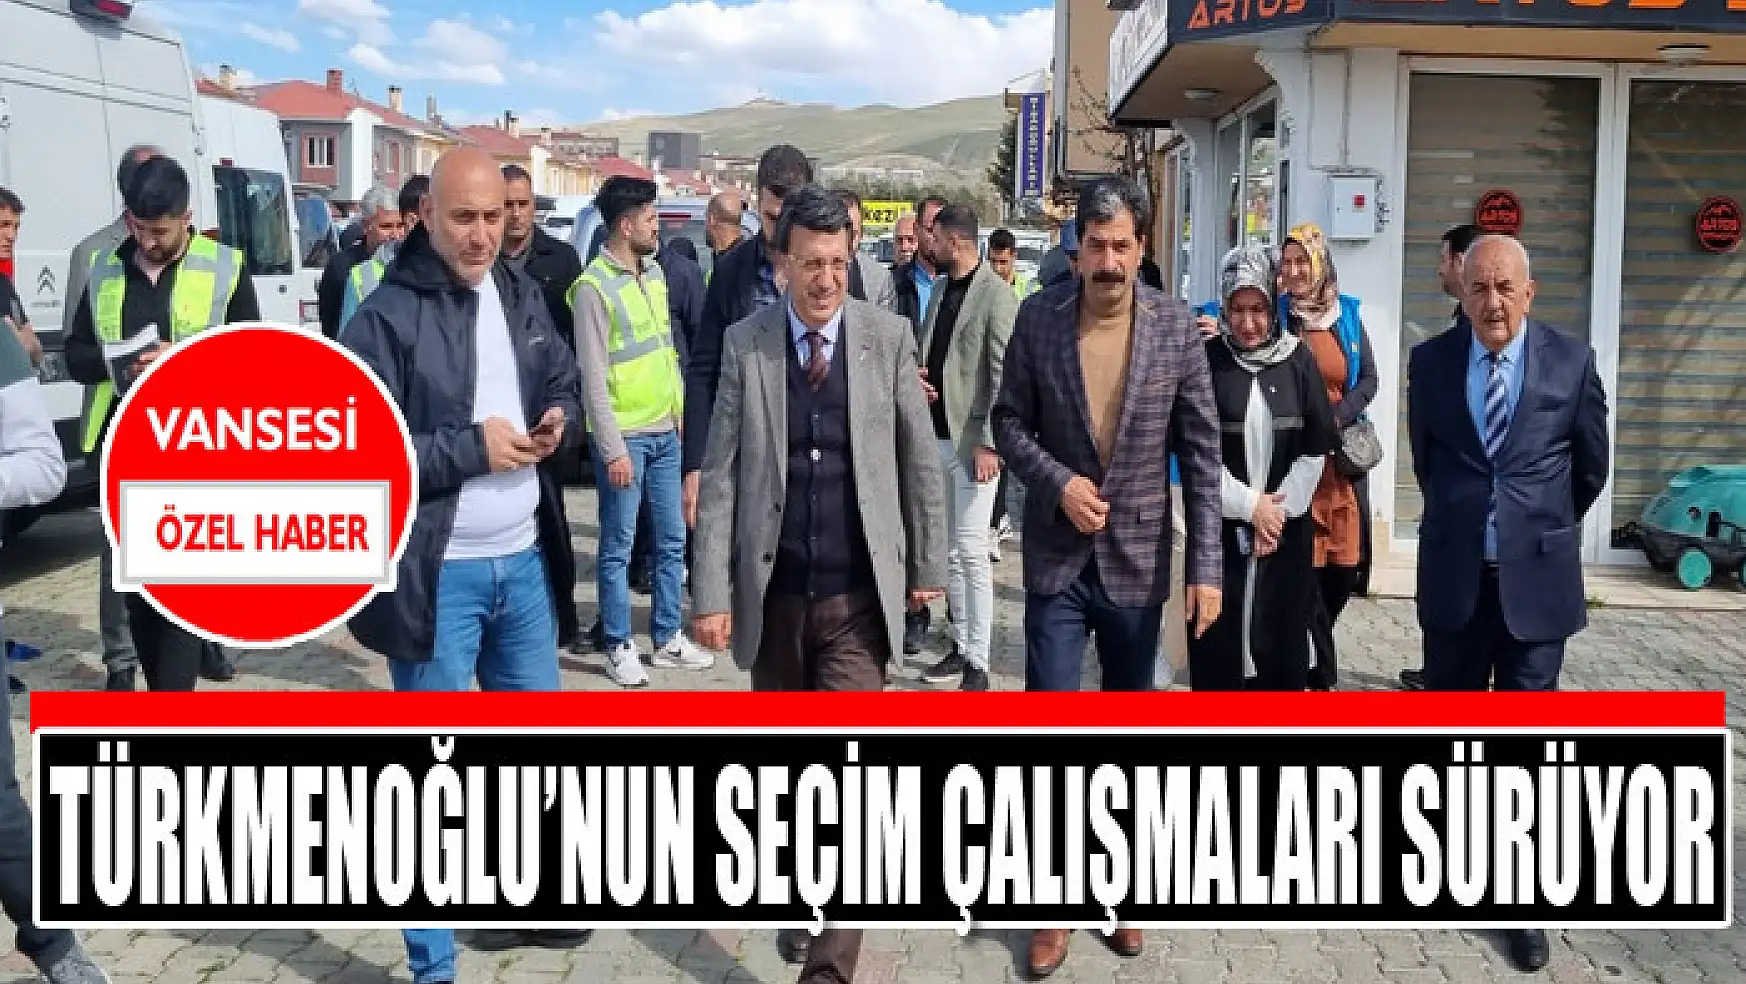 Türkmenoğlu'nun seçim çalışmaları sürüyor